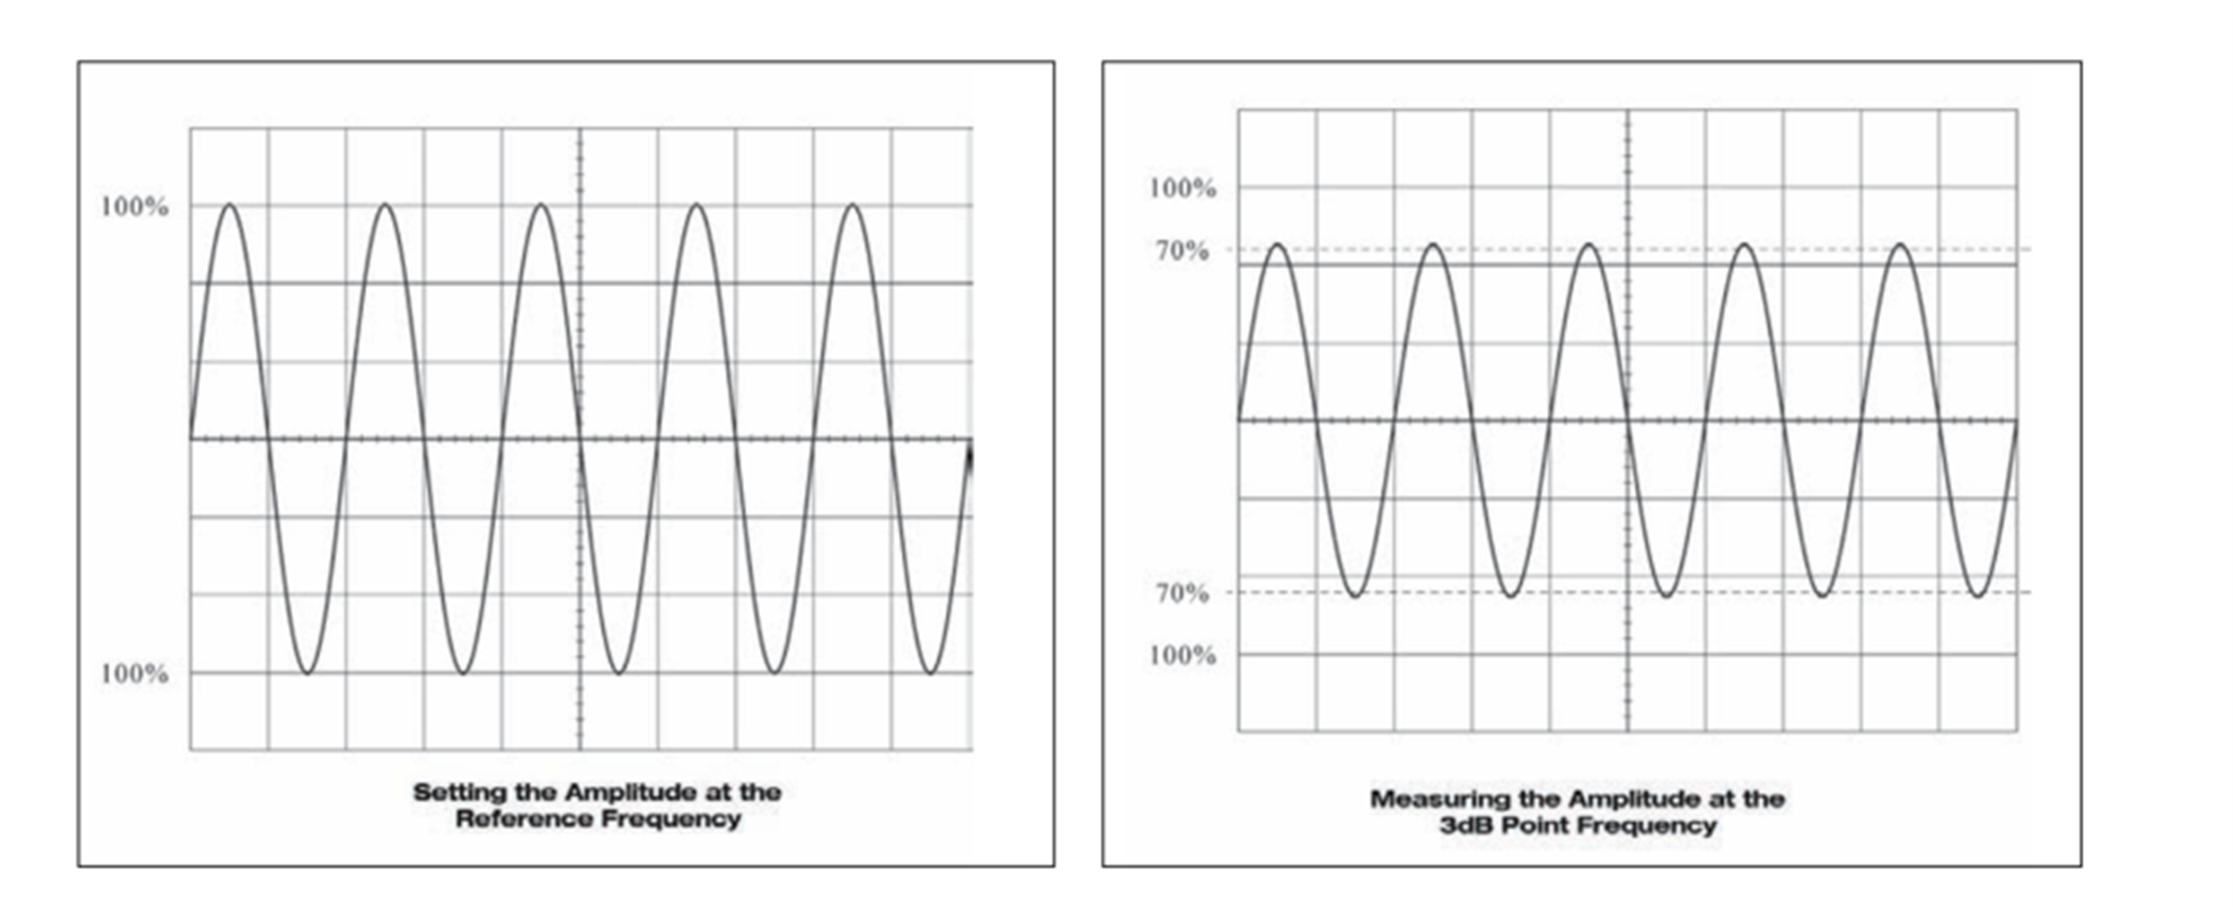 典型示波器的屏幕显示正弦波幅值降低 3 dB